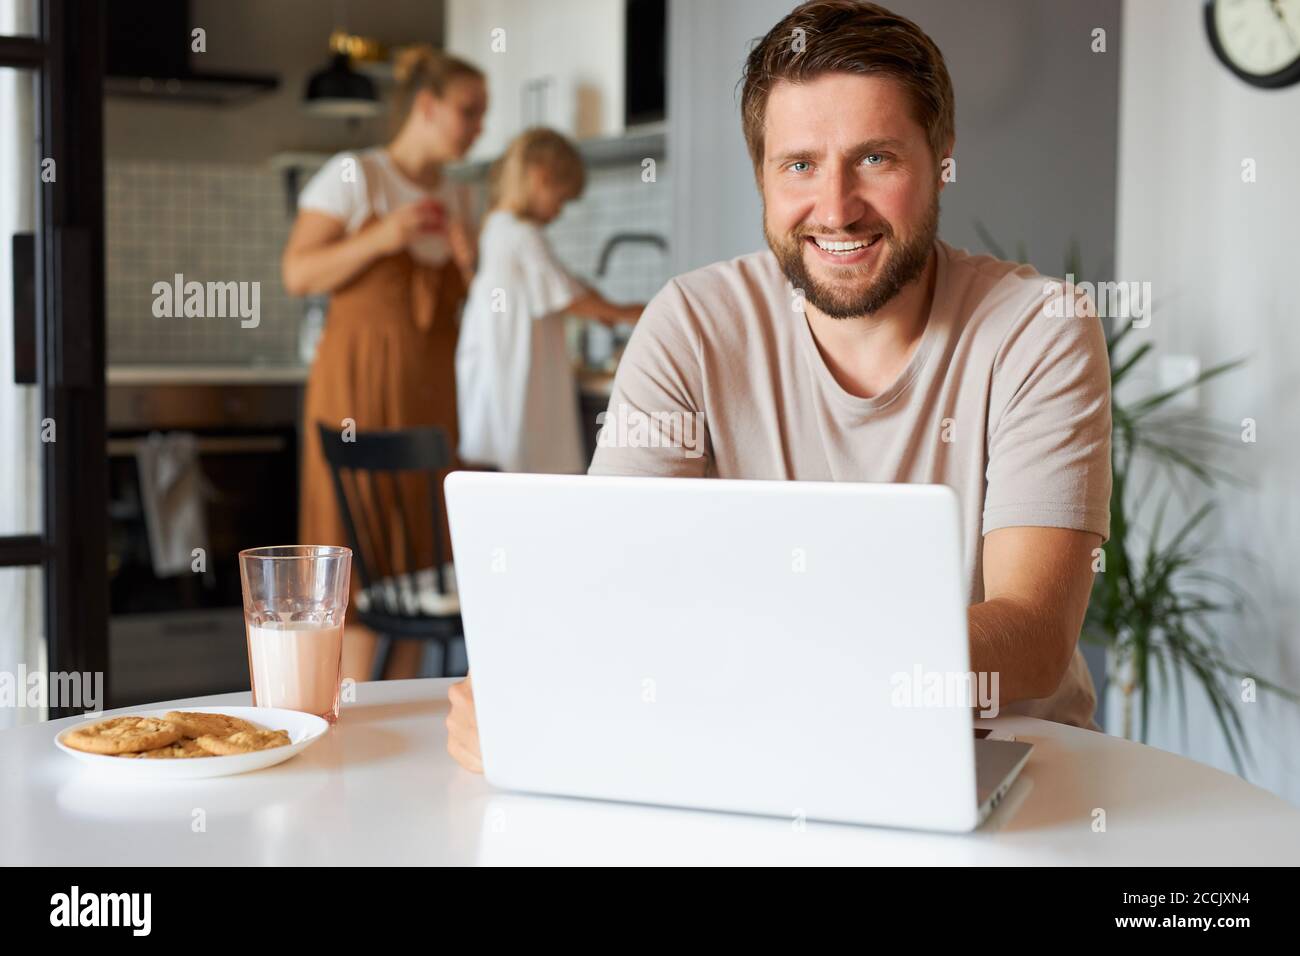 felice ragazzo positivo a freelance durante la quarantena, giovane maschio siede utilizzando laptop, donna e bambina in background Foto Stock